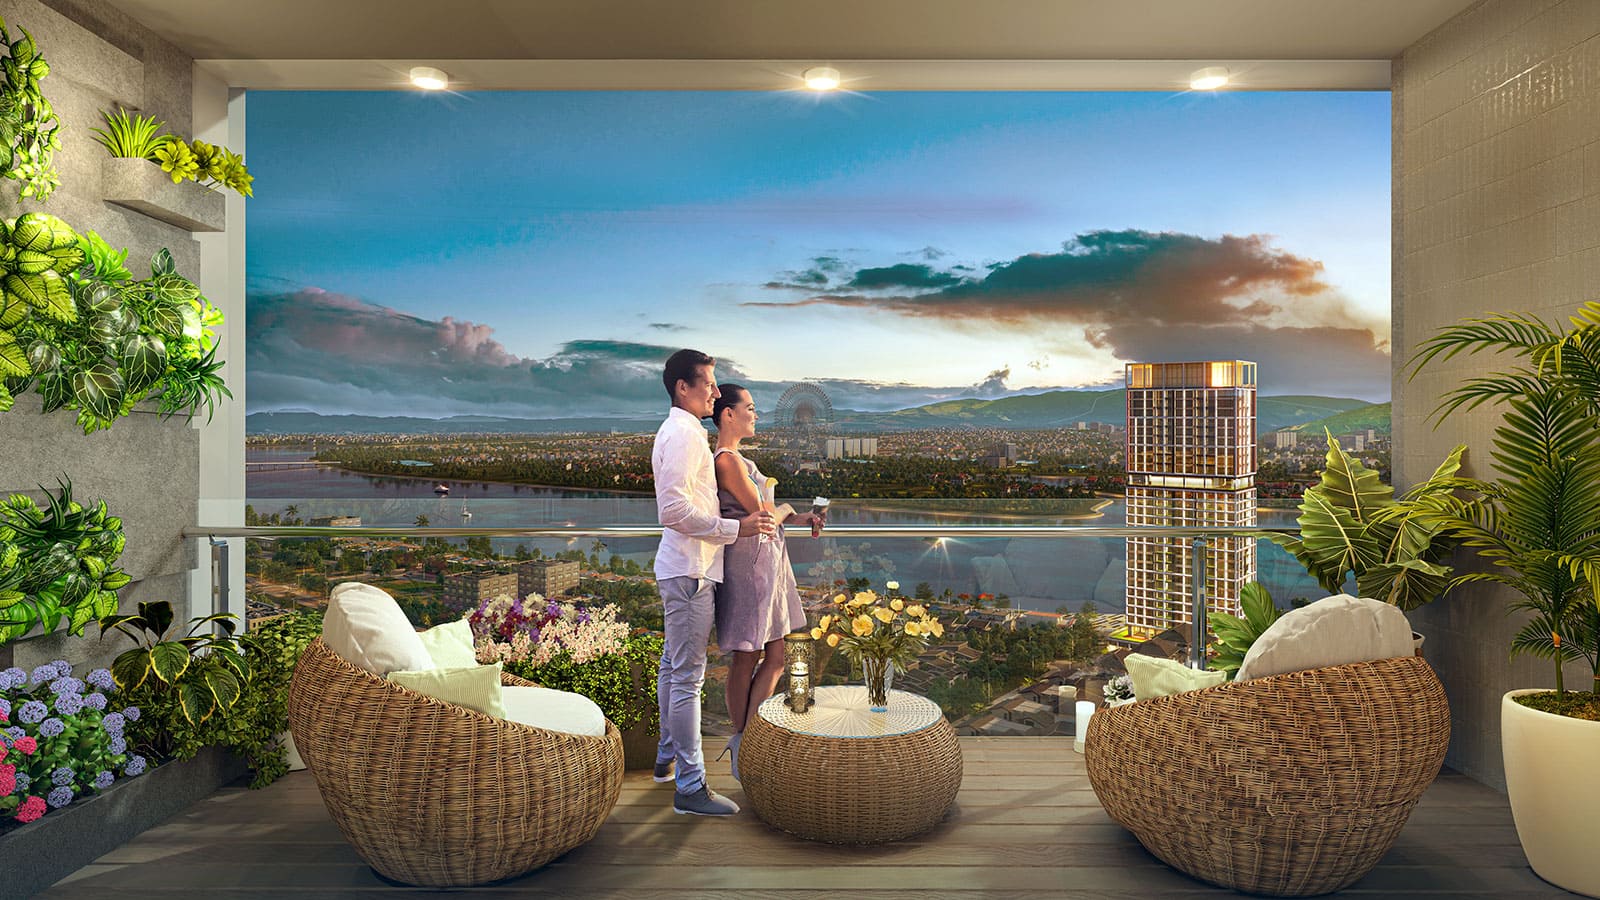 Hình ảnh phối cảnh dự án Sun Cosmo Residence Đà Nẵng được phát triển bởi tập đoàn Sun Group.